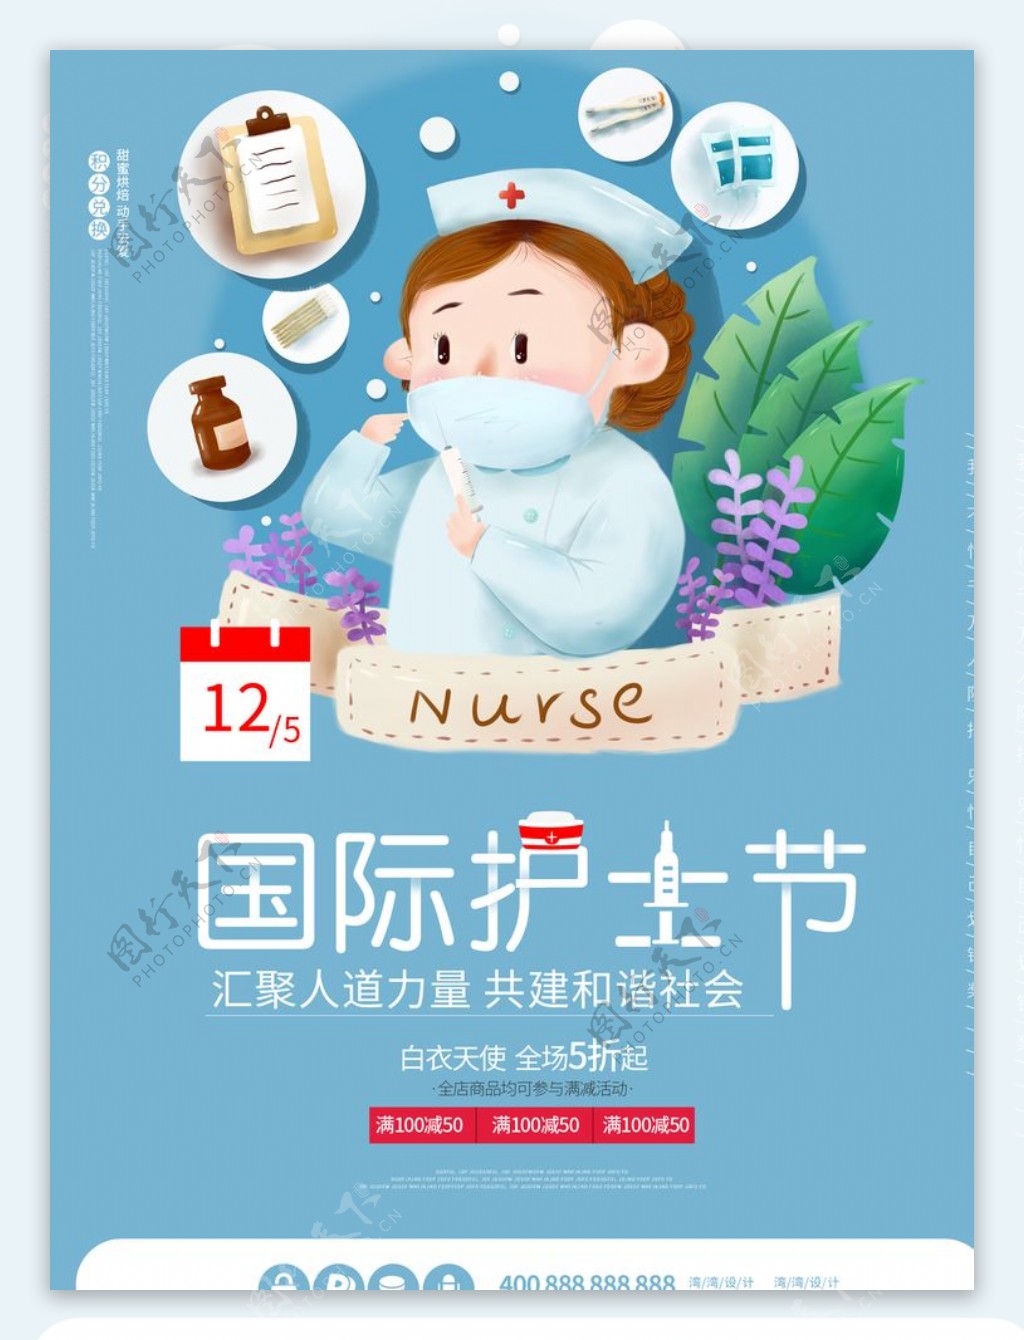 国际护士节白衣天使小清新插画